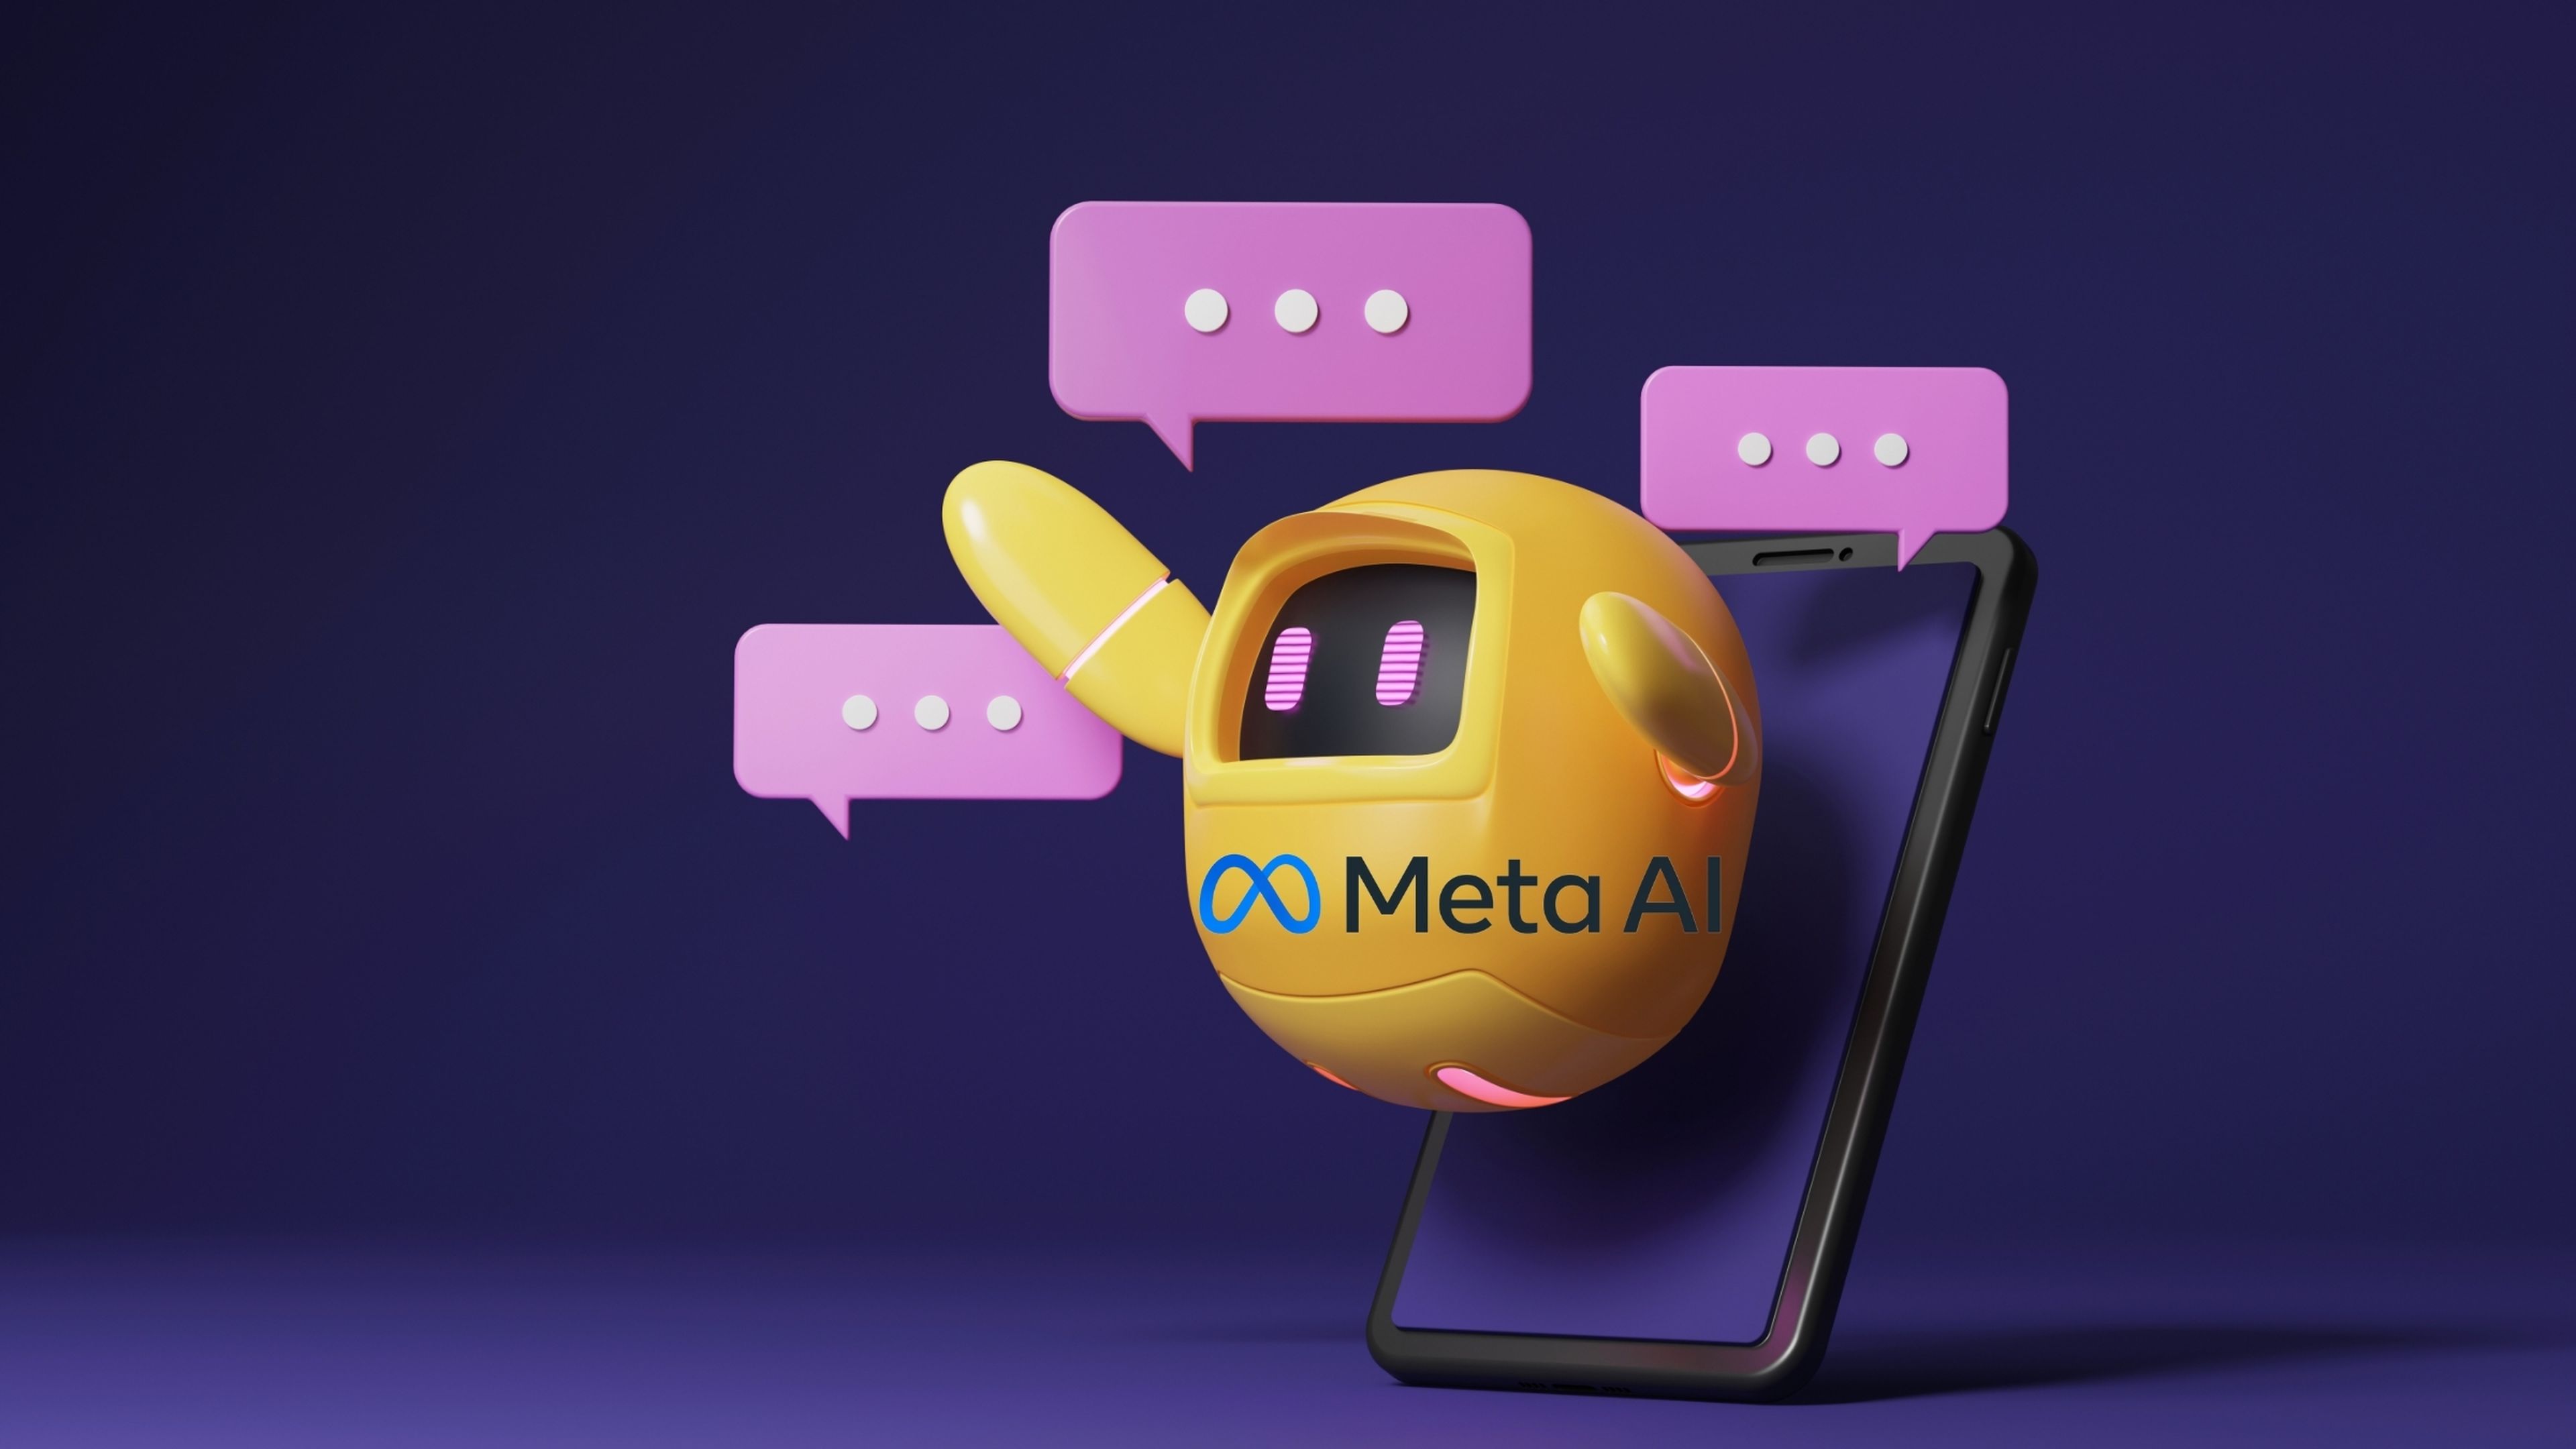 ¿Qué es Meta AI y qué ofrece este chatbot respecto a los demás?